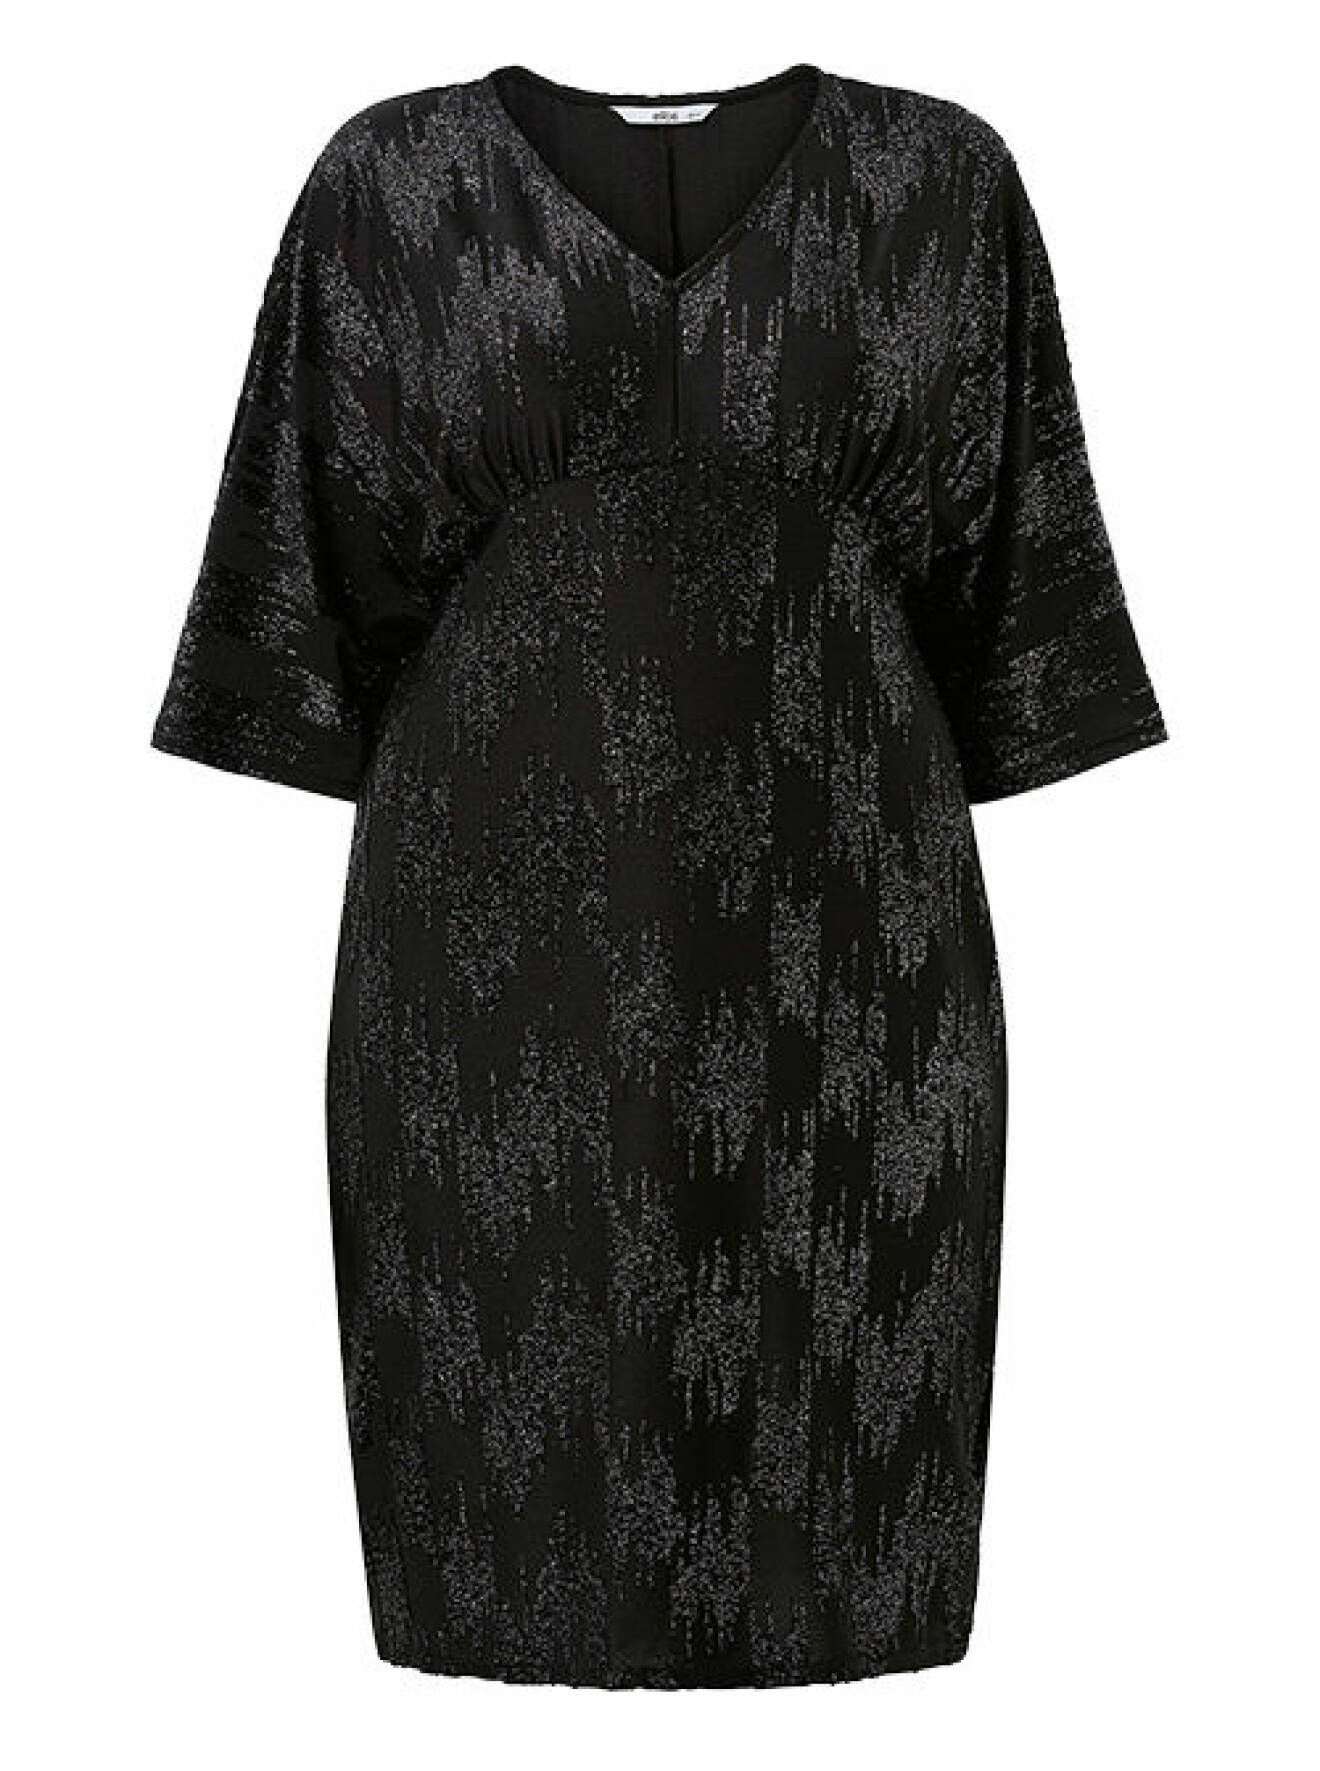 svart glittrig klänning från kakan x ellos